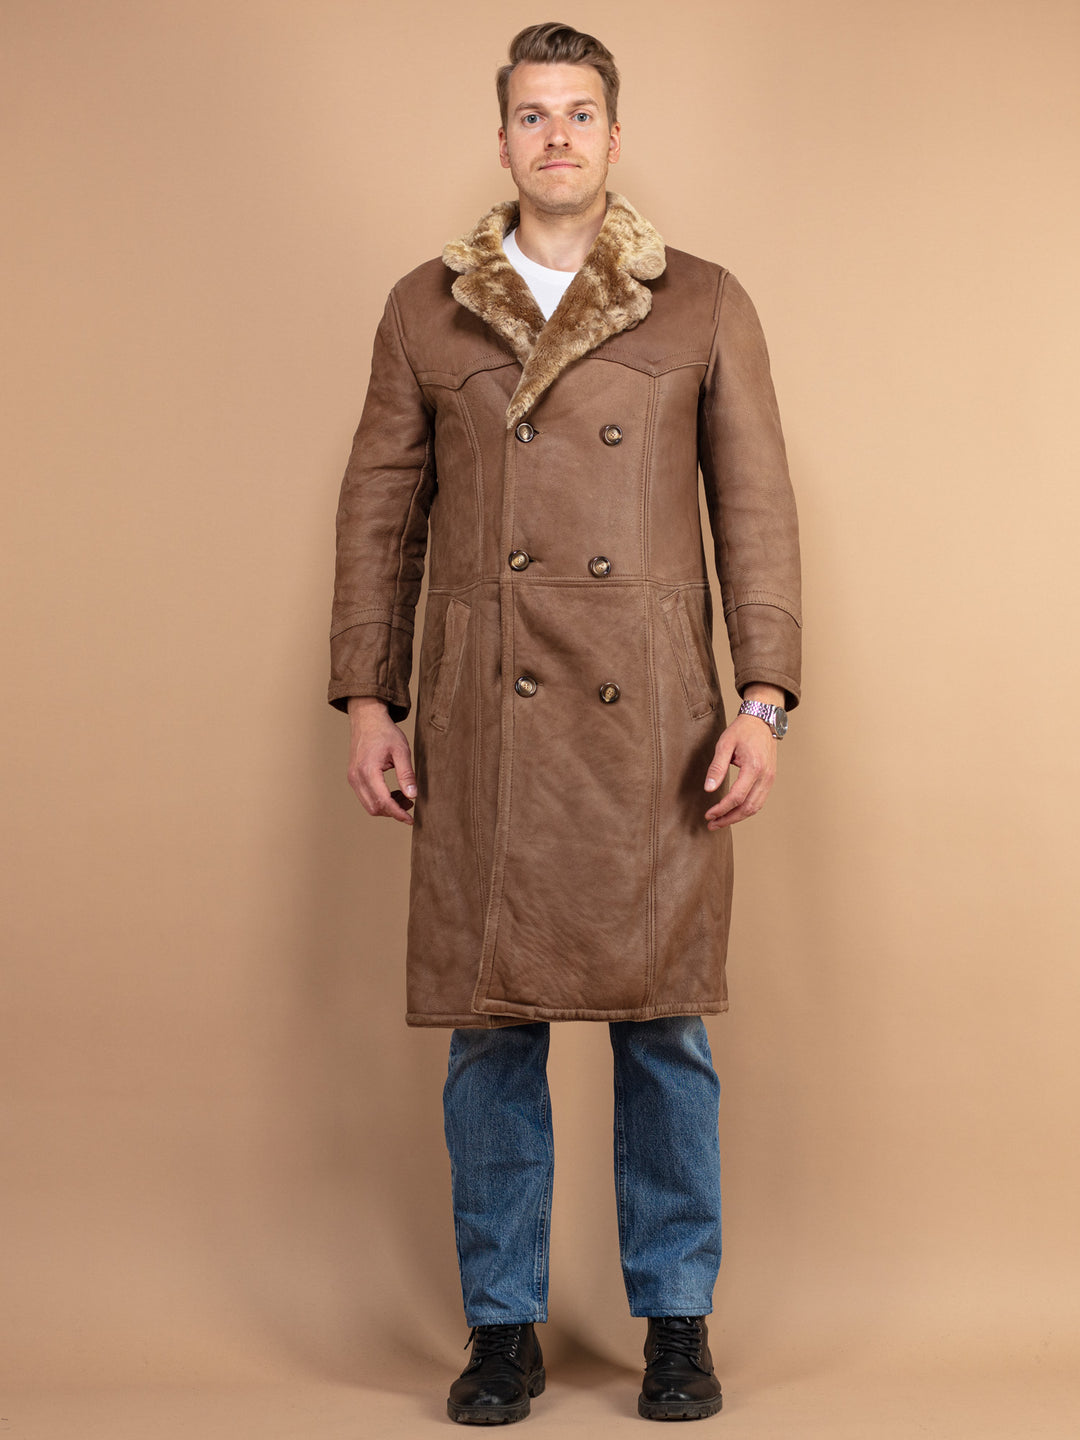 Sheepskin Men Coat 70’s vintage sheepskin leather long coat men western style vintage leather winter coat style clothing size medium M